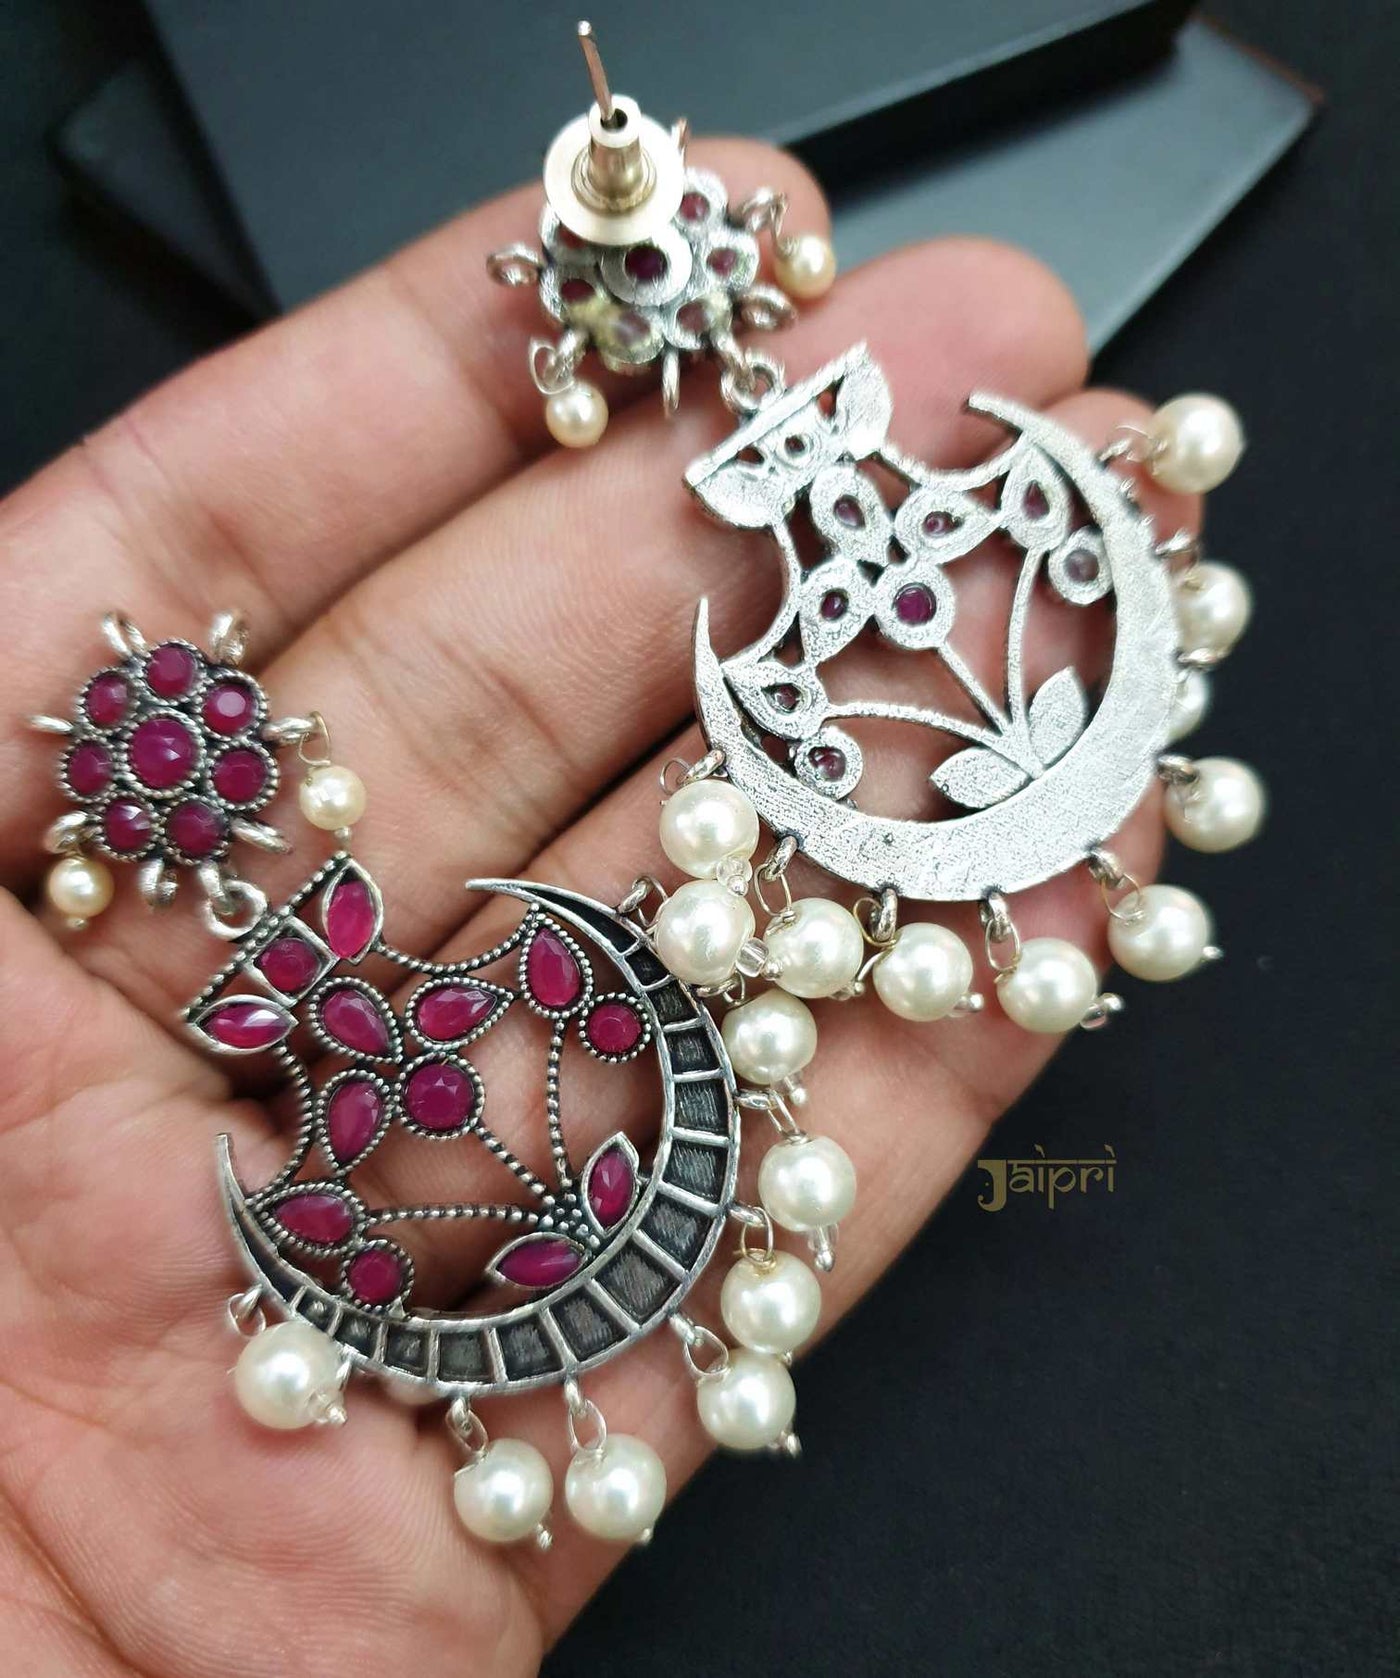 Ruby & Pearl Stone Chand-Bali Oxidized Earrings